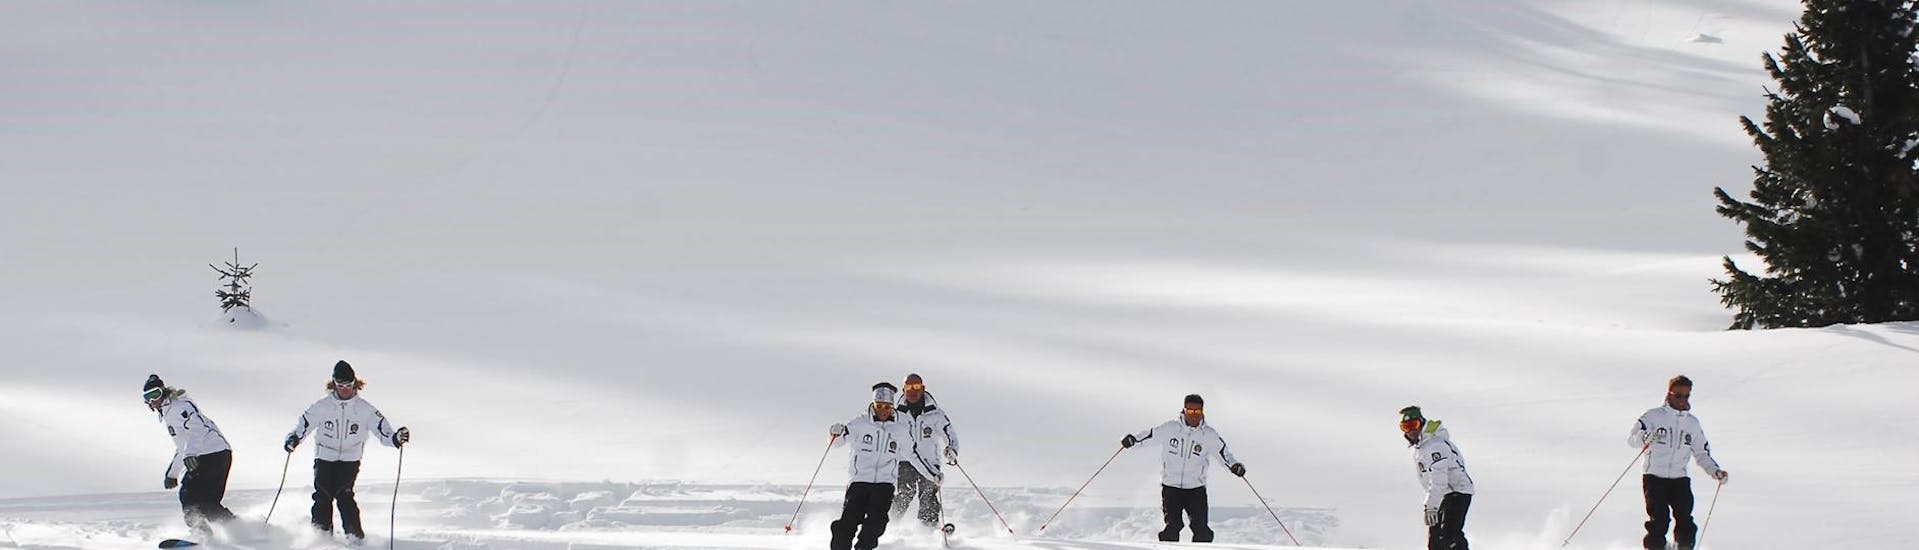 Skilehrer trainieren im Neuschnee in Moena vor einem der Moena - Erwachsenenskikurse für alle Levels.